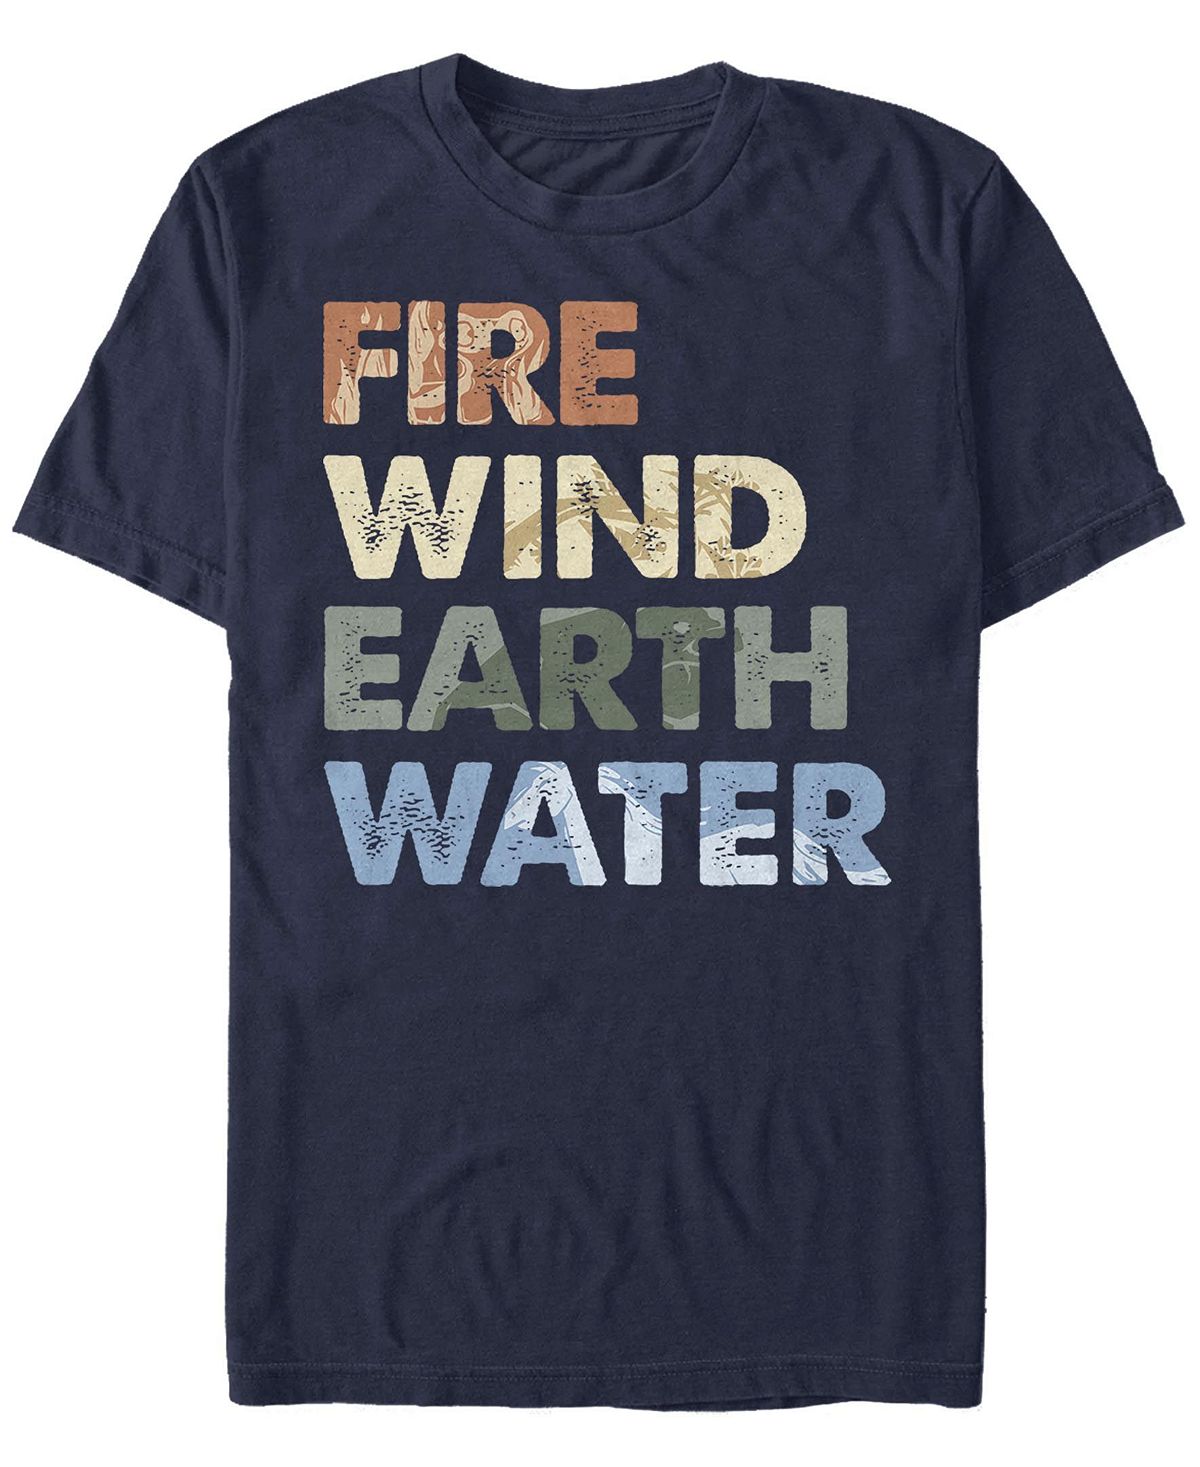 Мужская футболка с круглым вырезом element stack с короткими рукавами Fifth Sun, синий